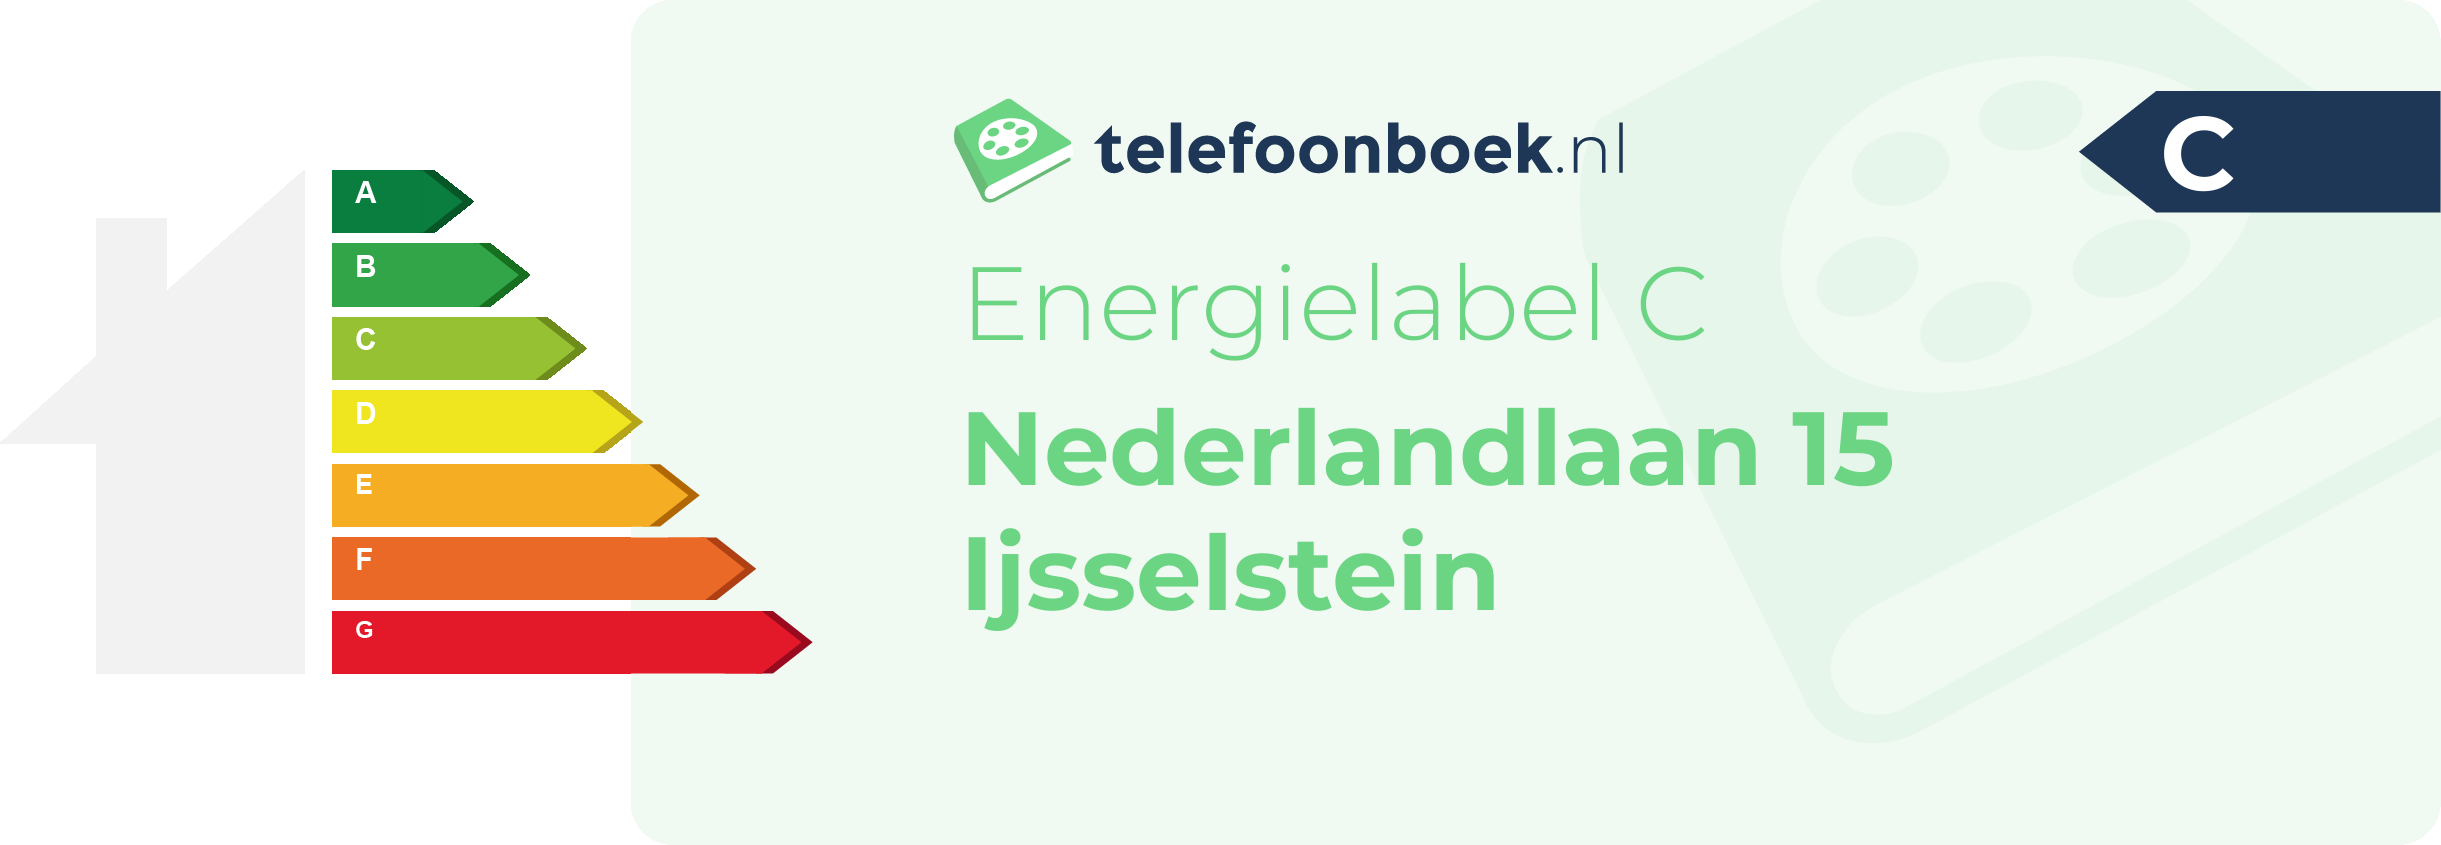 Energielabel Nederlandlaan 15 Ijsselstein